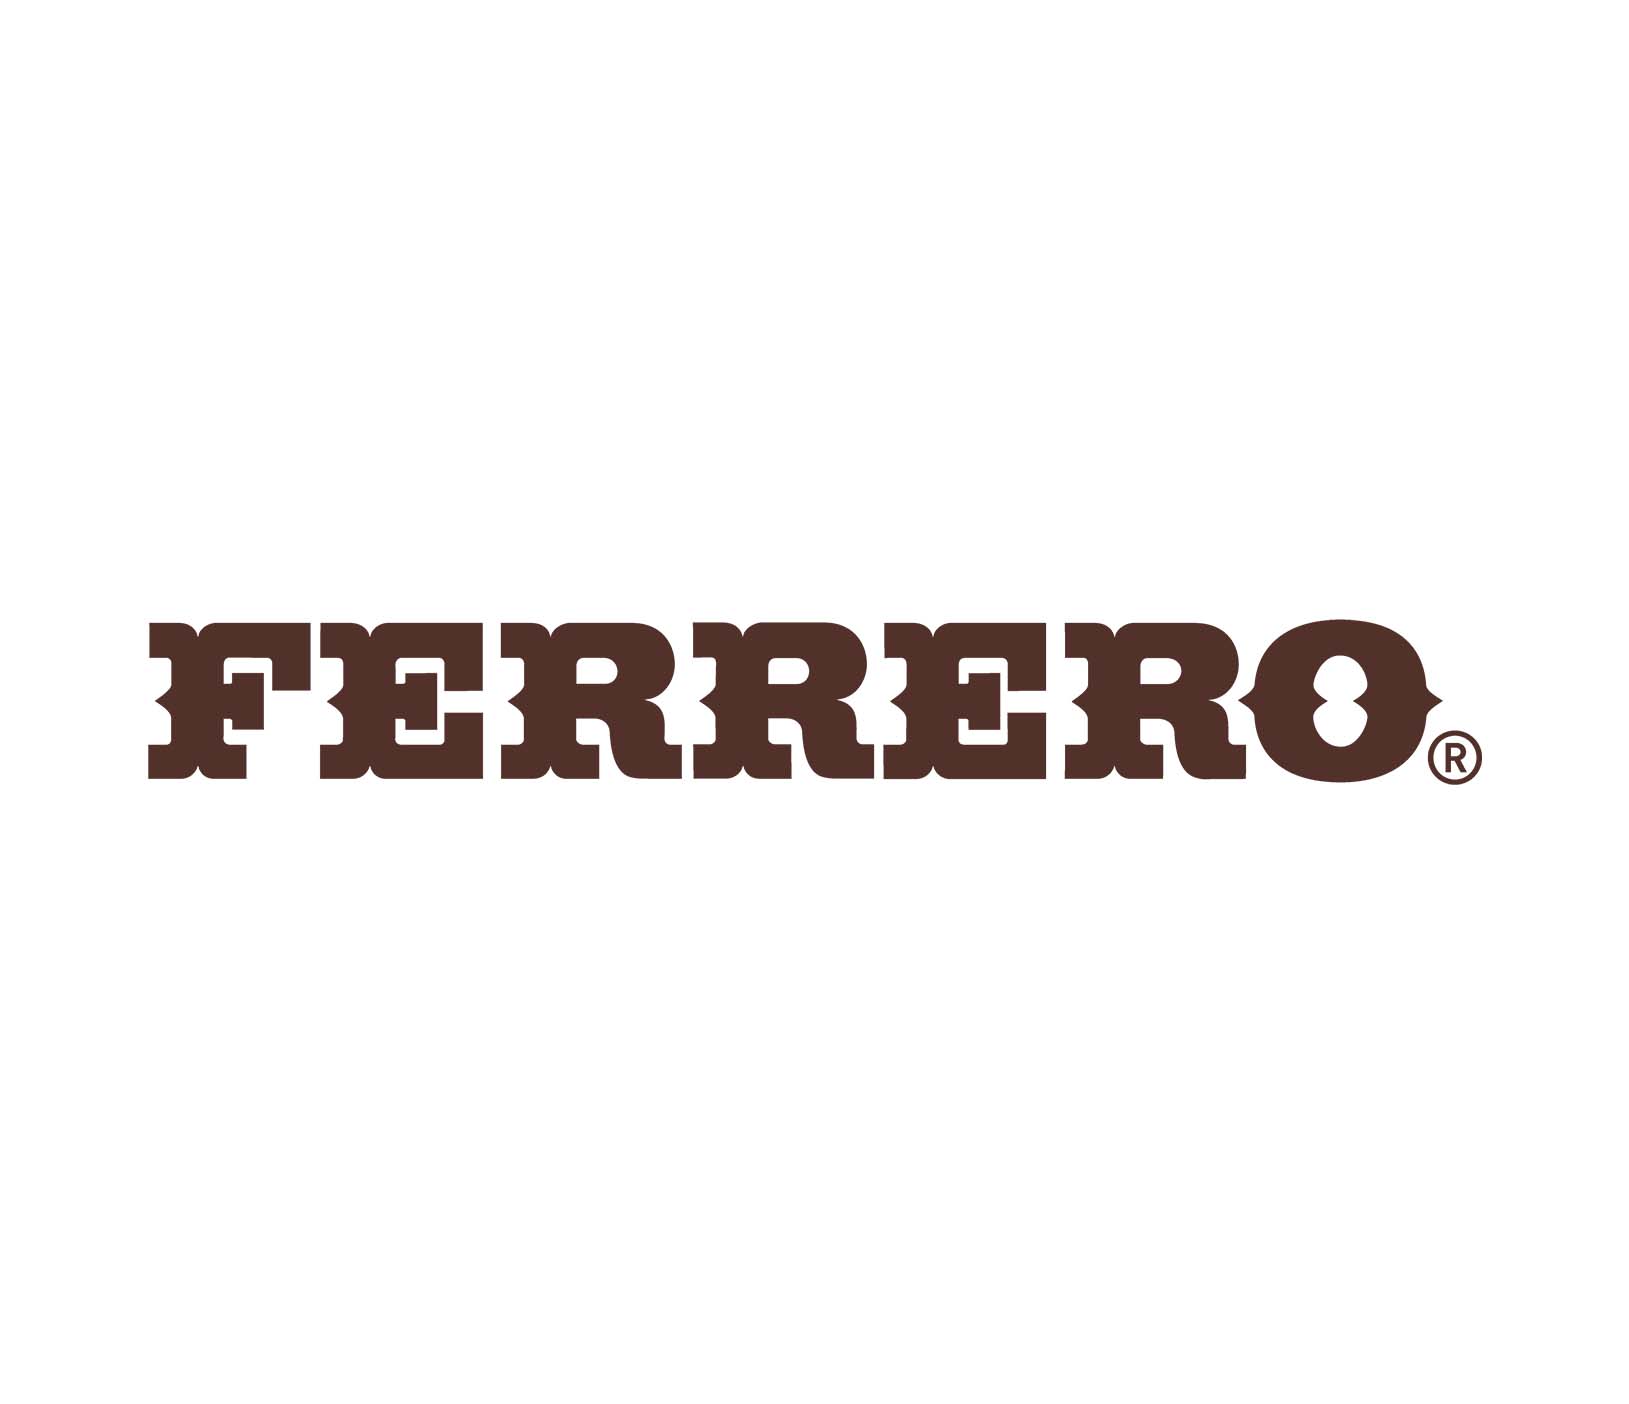 Порно видео Лука Ферреро - Скачать и смотреть онлайн порно Luca Ferrero